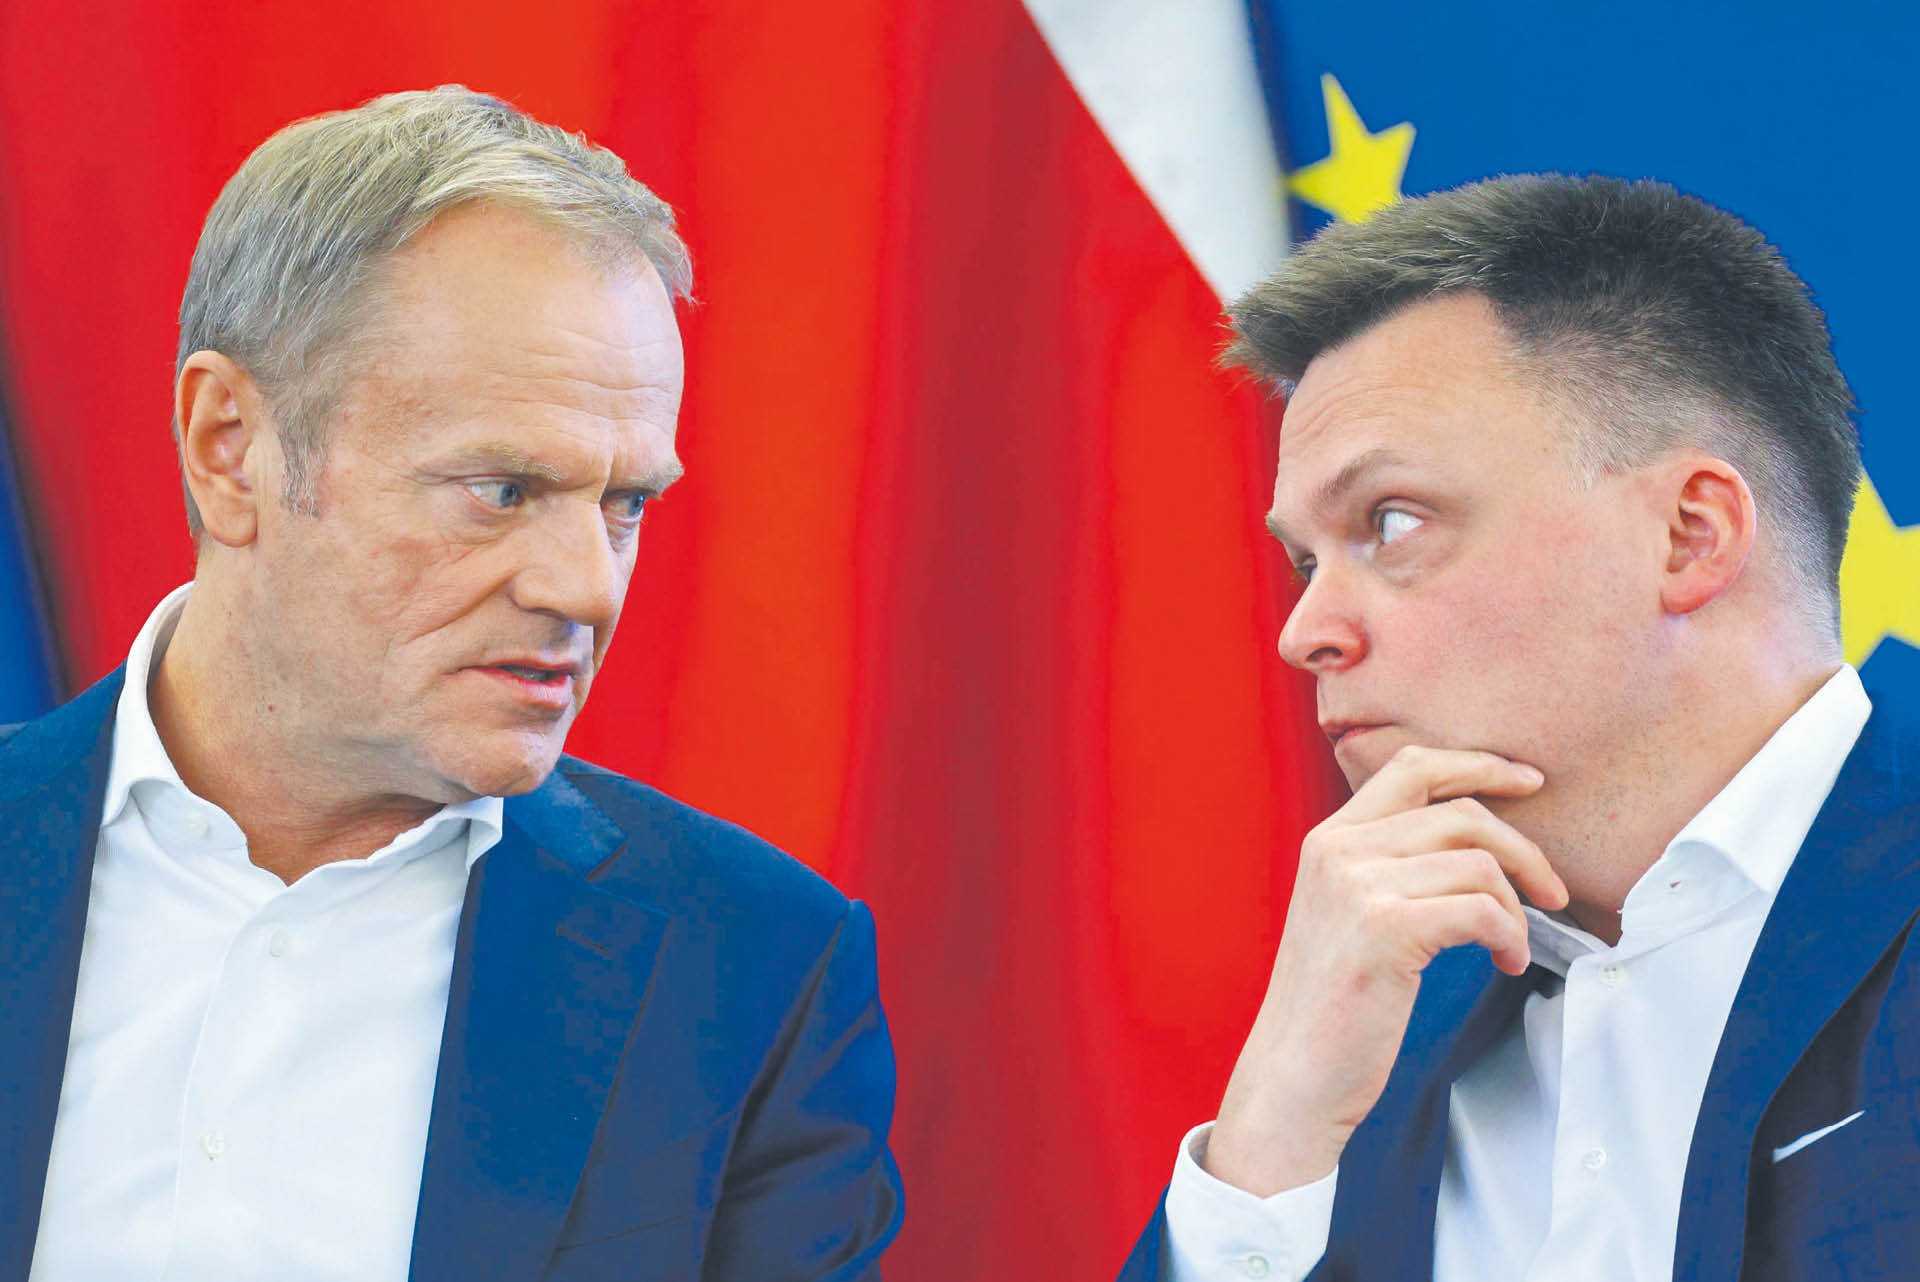 Koalicja Obywatelska i Polska 2050 oraz ich liderzy Donald Tusk i Szymon Hołownia chcą rozliczenia rządów PiS z pomocą komisji śledczych